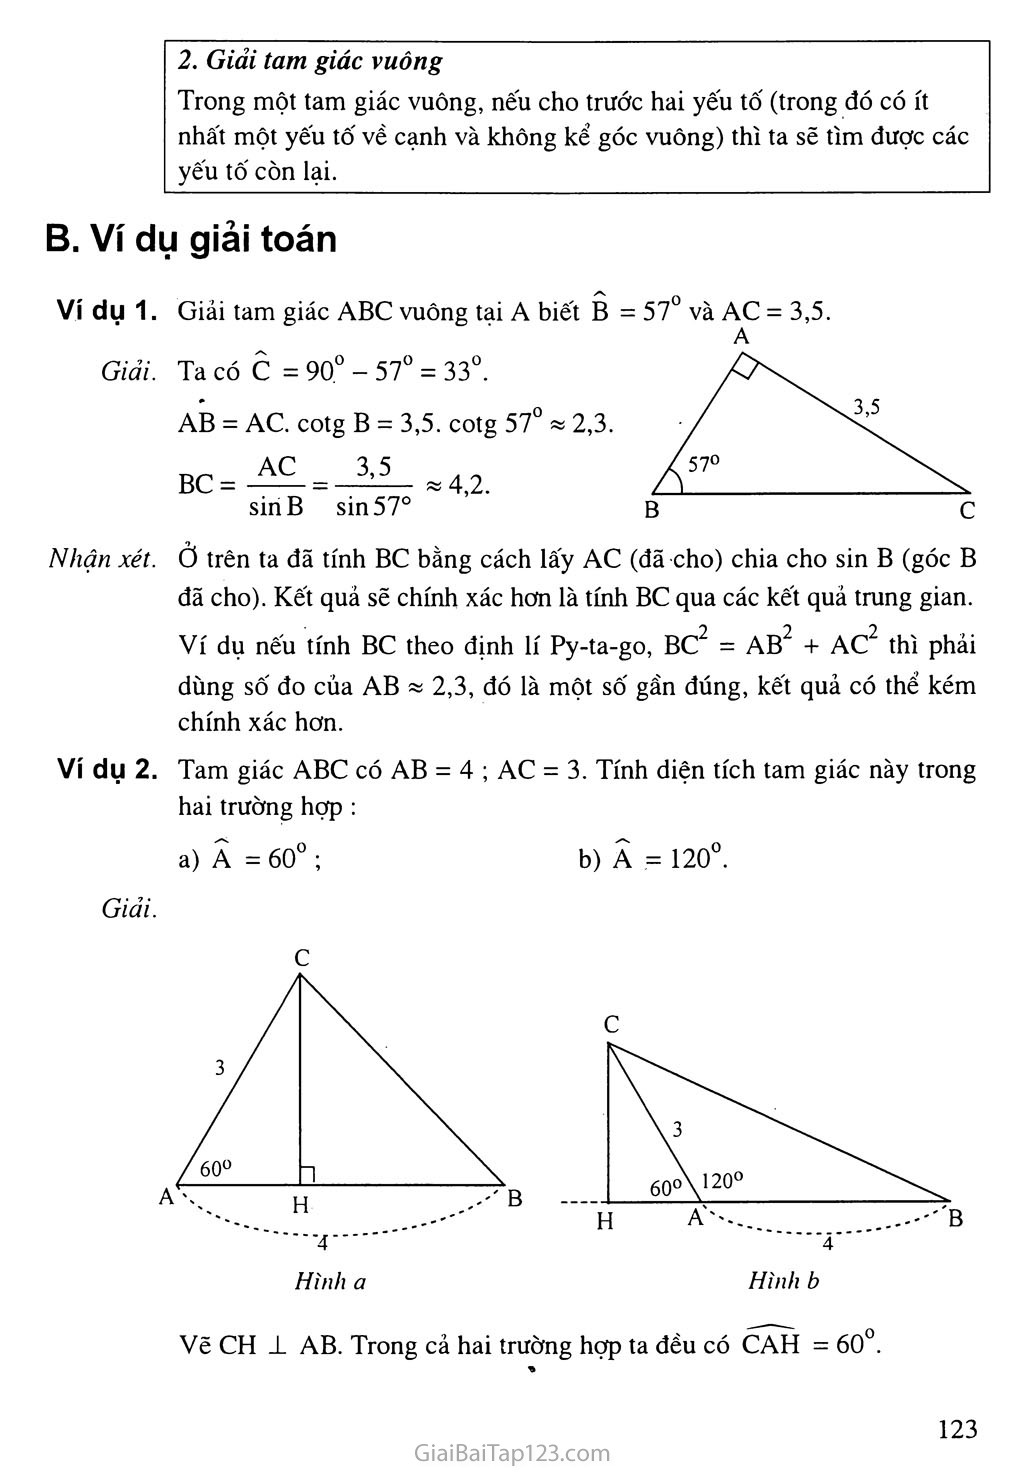 Bài 4. Một số hệ thức về cạnh và góc trong tam giác vuông trang 2